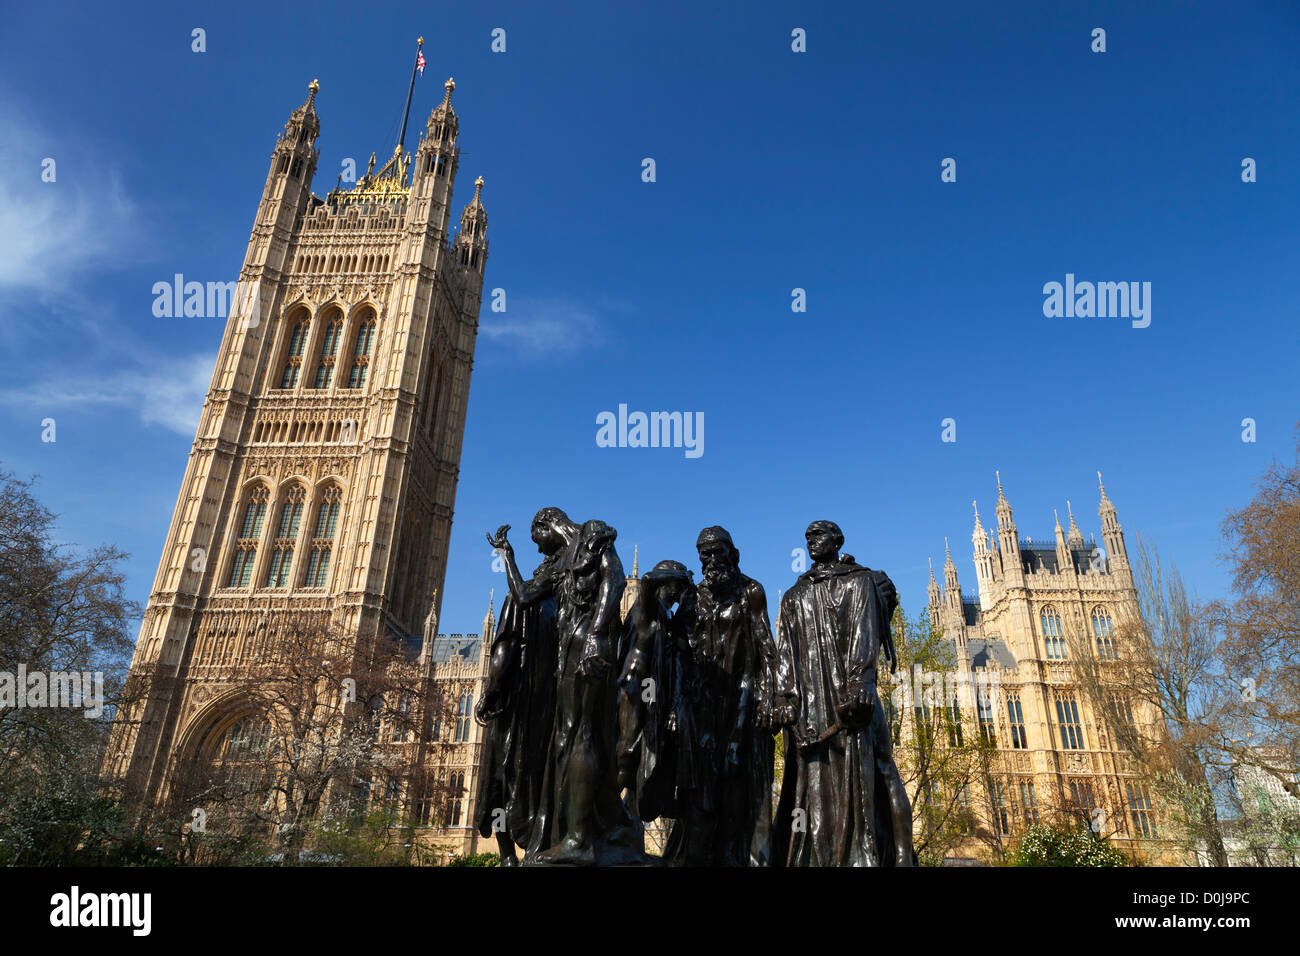 Rodins Bürger von Calais in Victoria Tower Gardens in London. Stockfoto